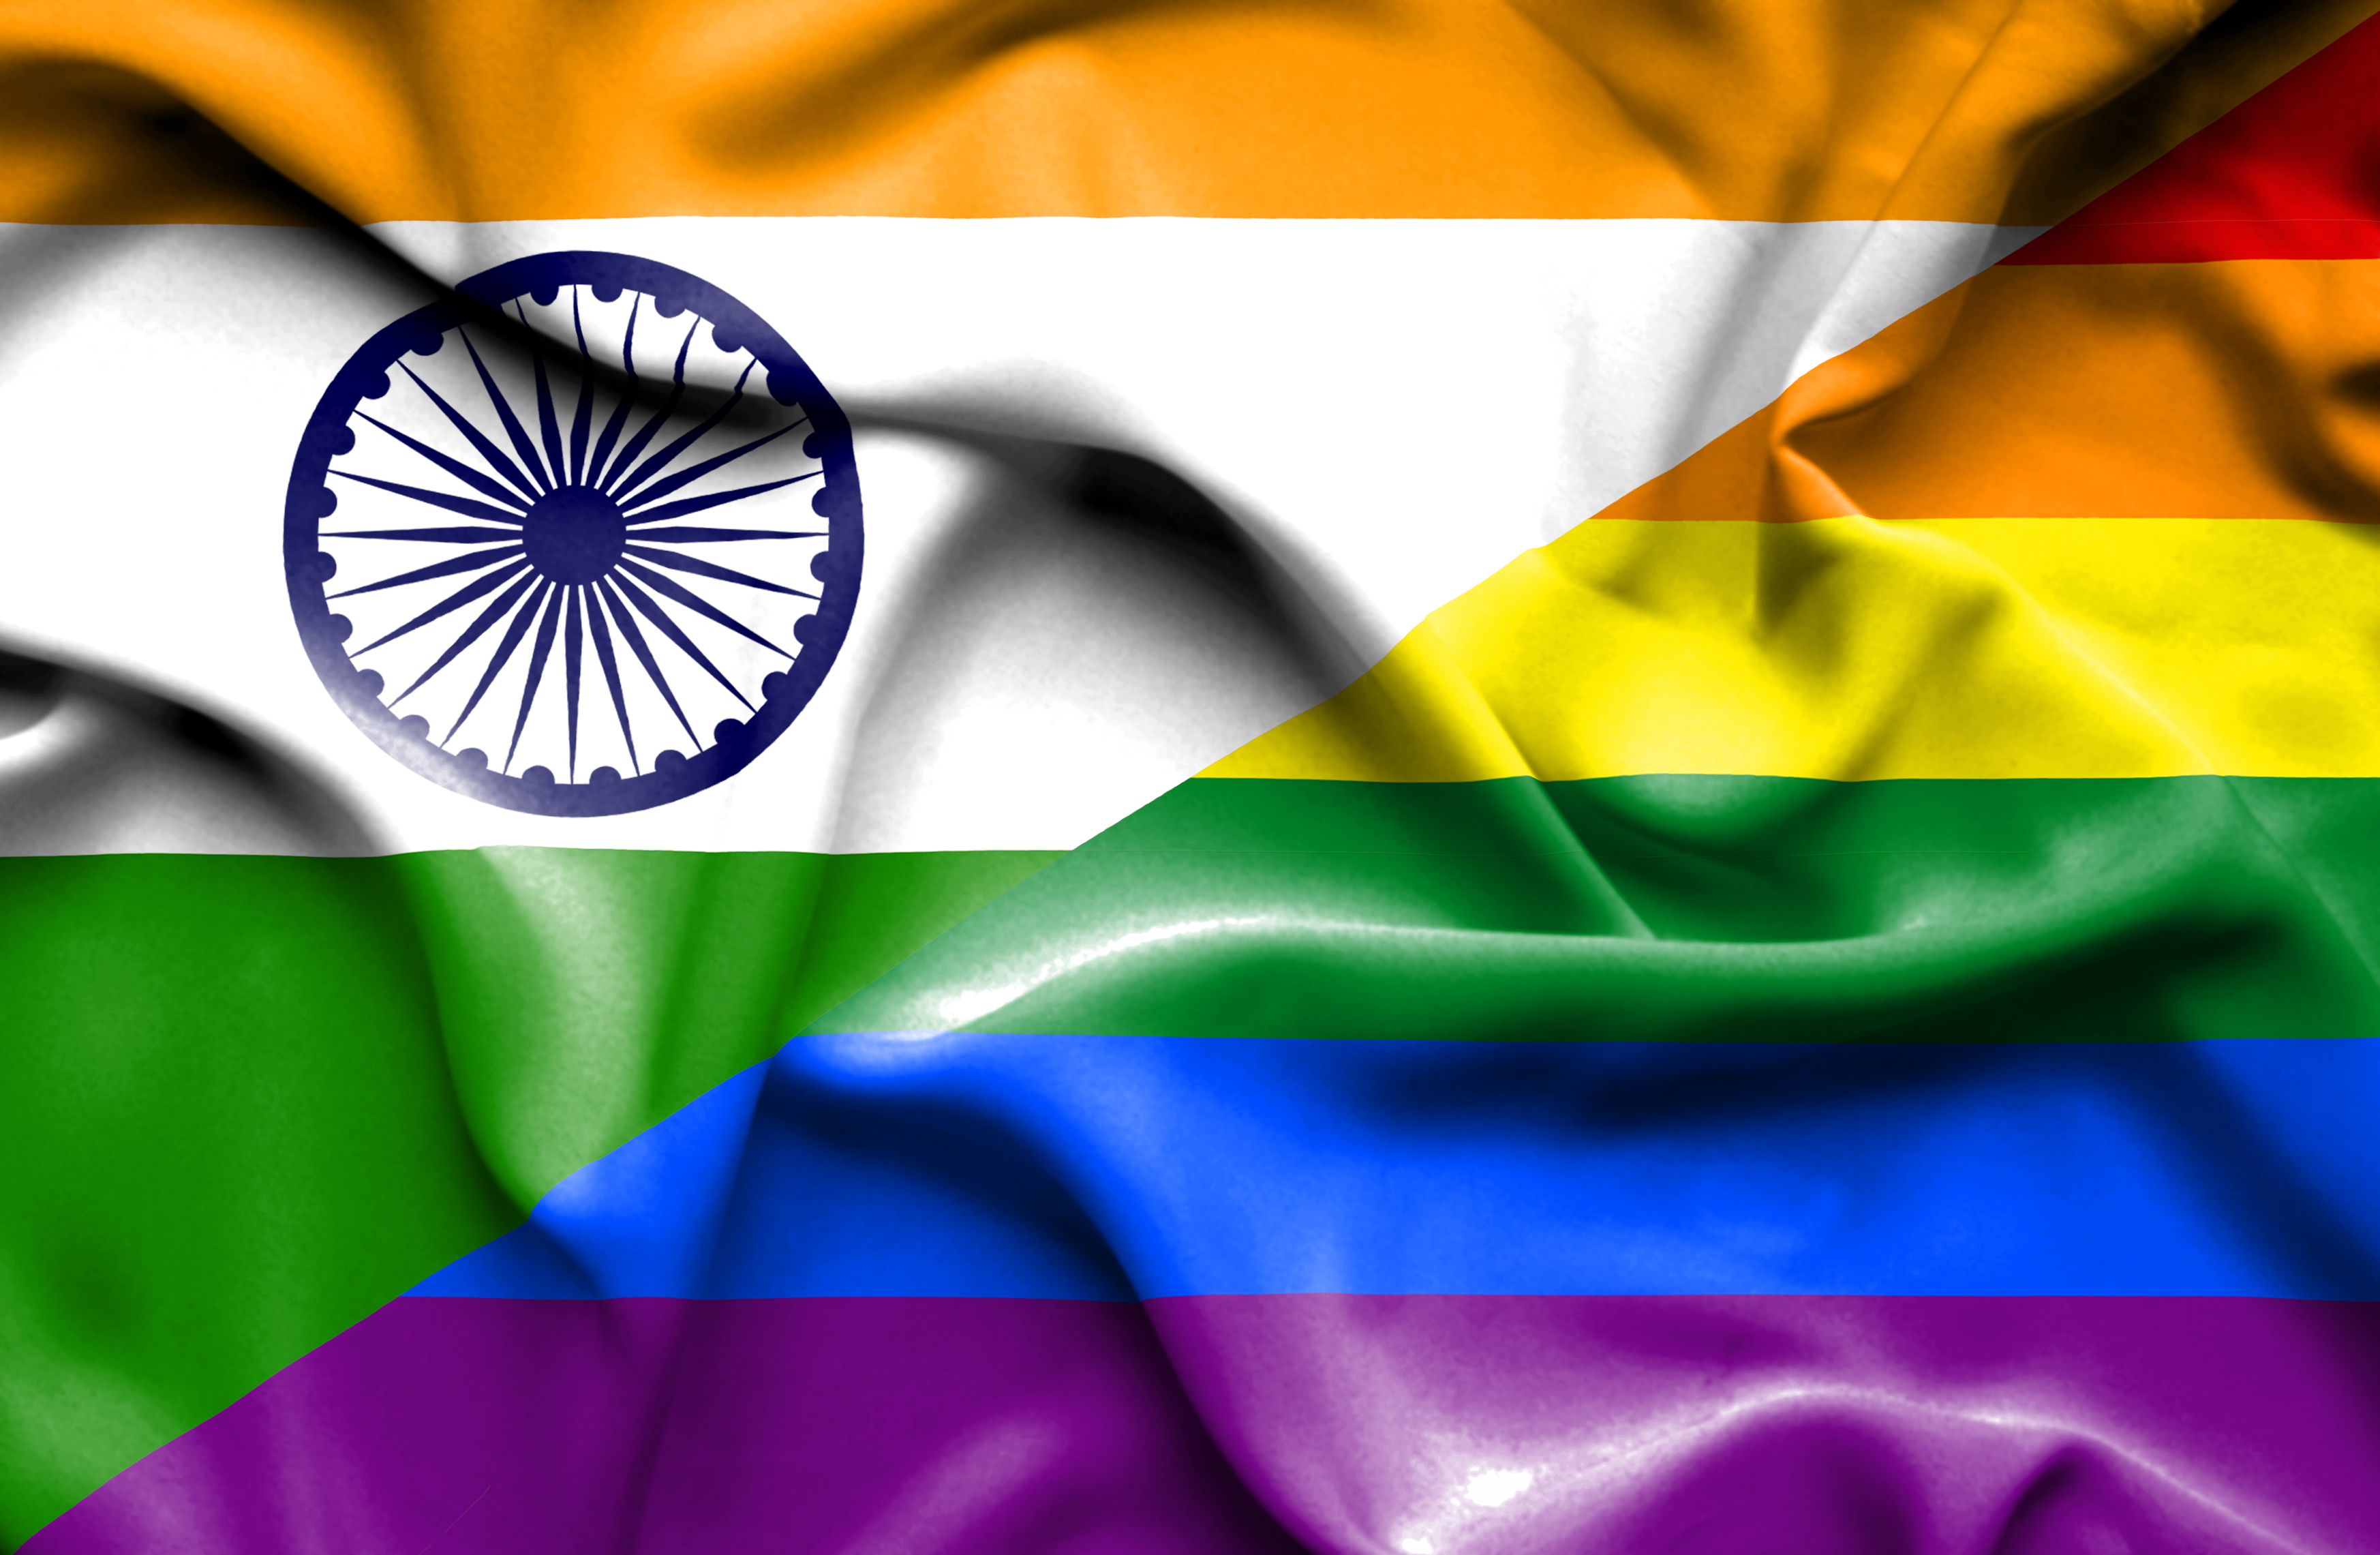 Mixtur der Flaggen Indiens und der "LGTB"-Bewegung